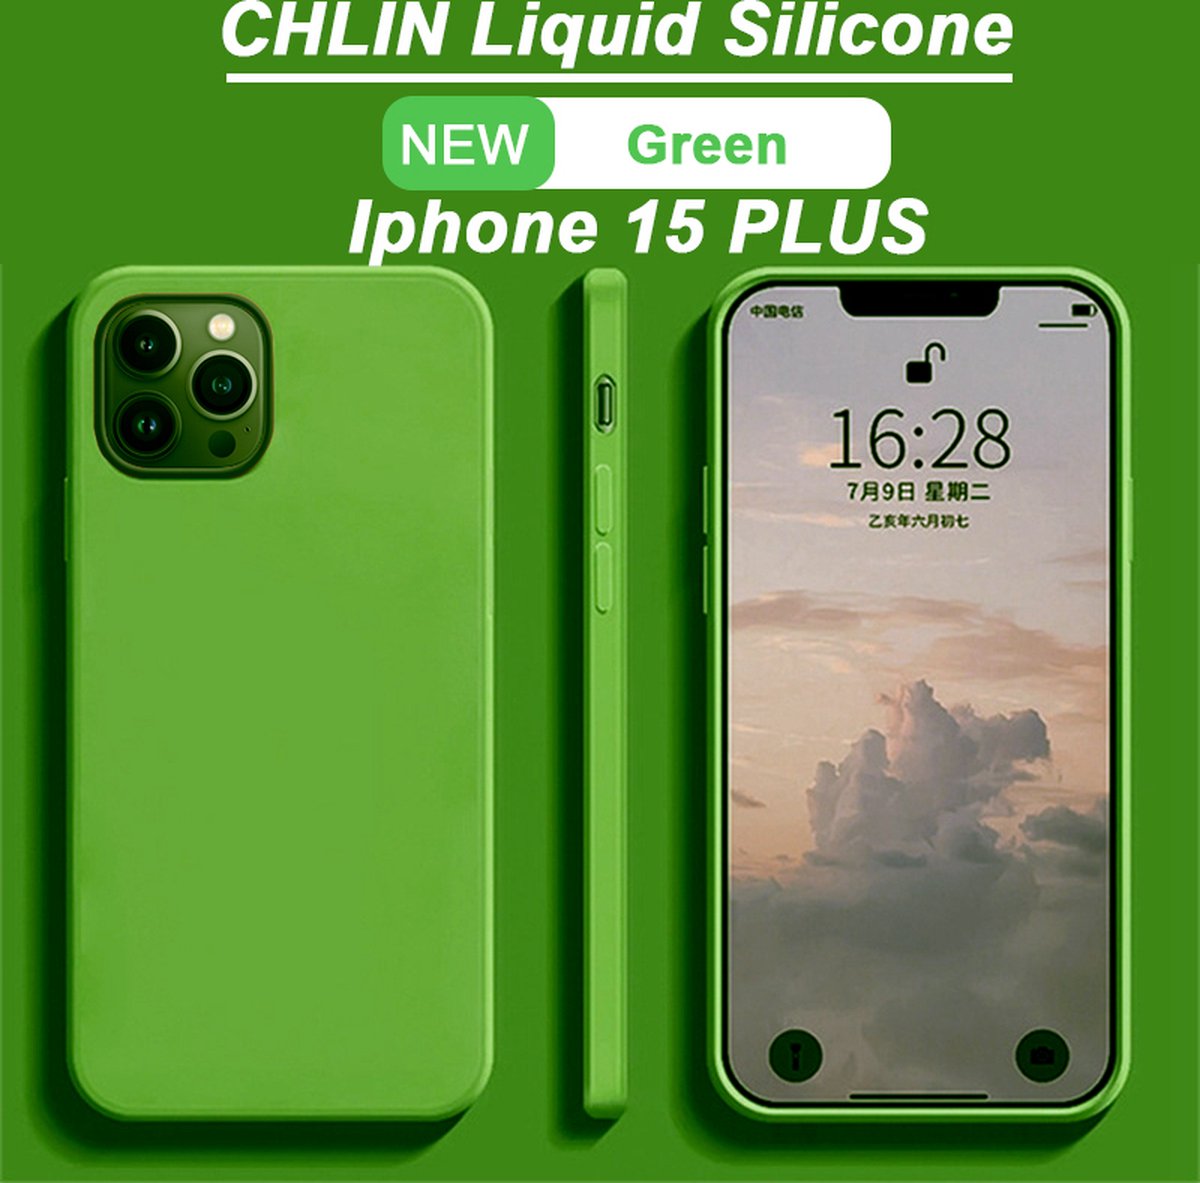 CL CHLIN® Premium Siliconen Case Iphone 15 Plus Groen - Iphone 15 Plus hoesje - Iphone 15 Plus case - Iphone 15 Plus hoes - Silicone hoesje - Iphone 15 Plus protection - Iphone 15 Plus protector.